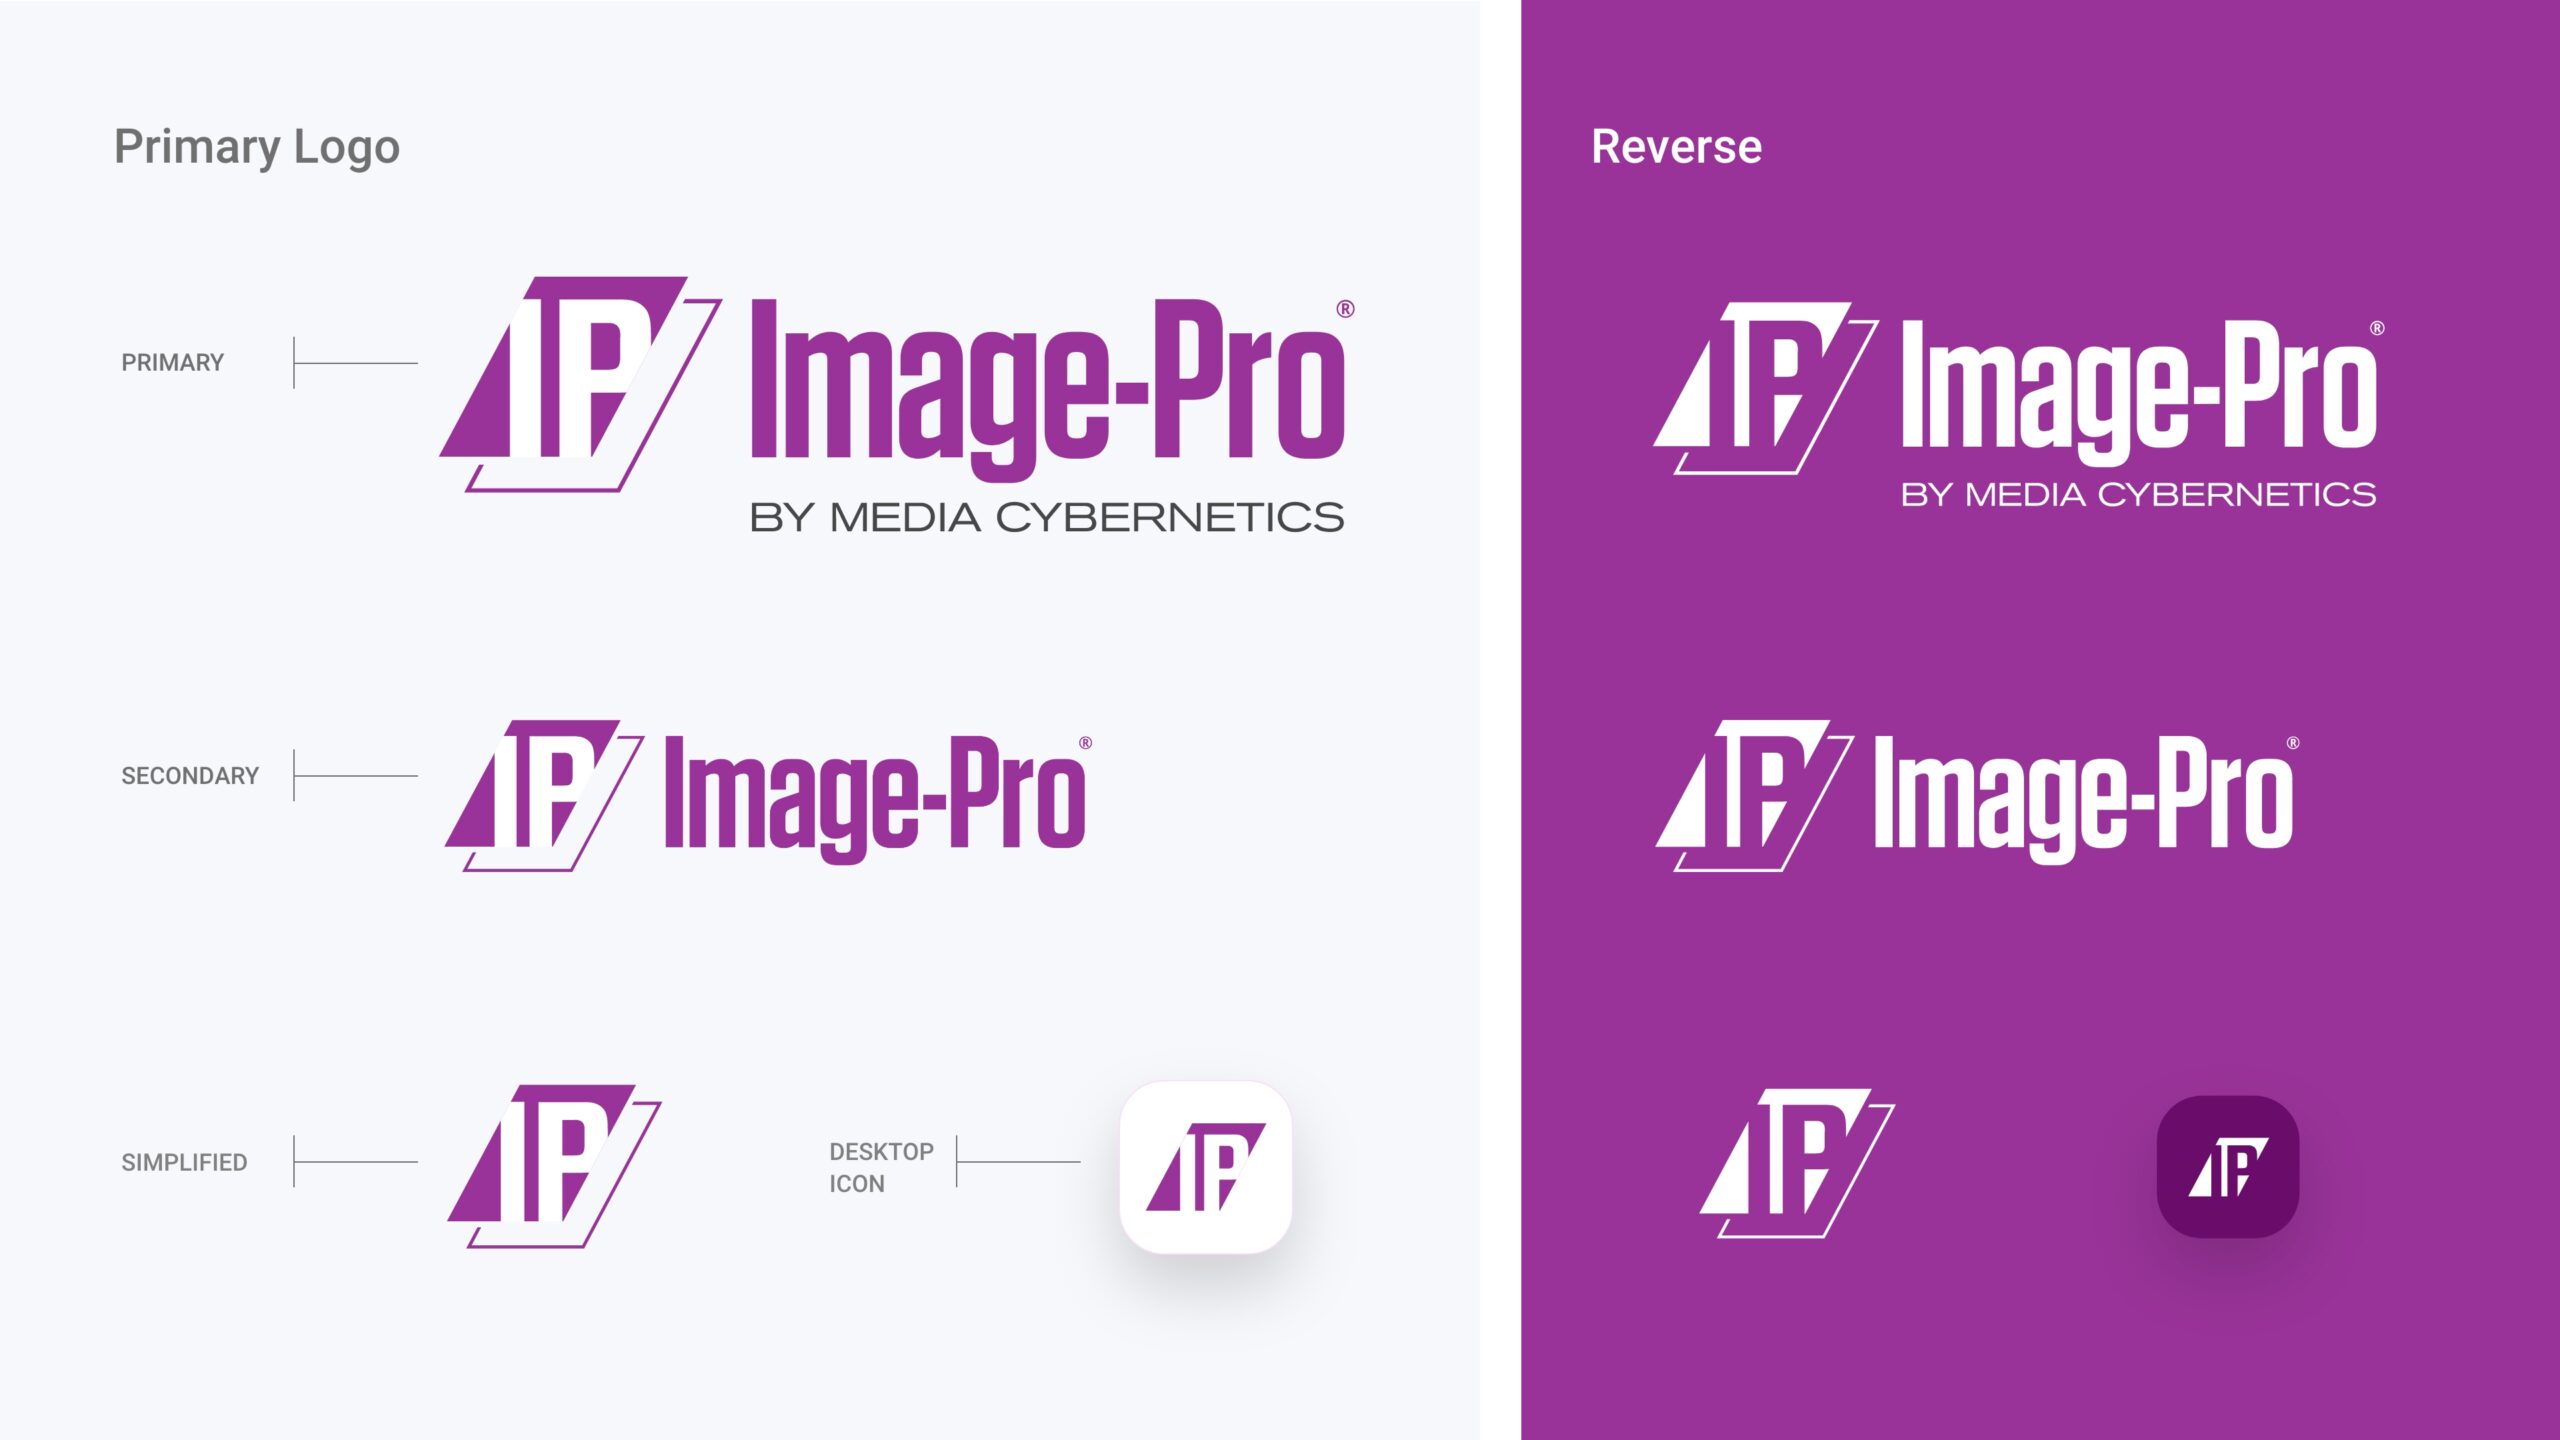 Image-Pro logos